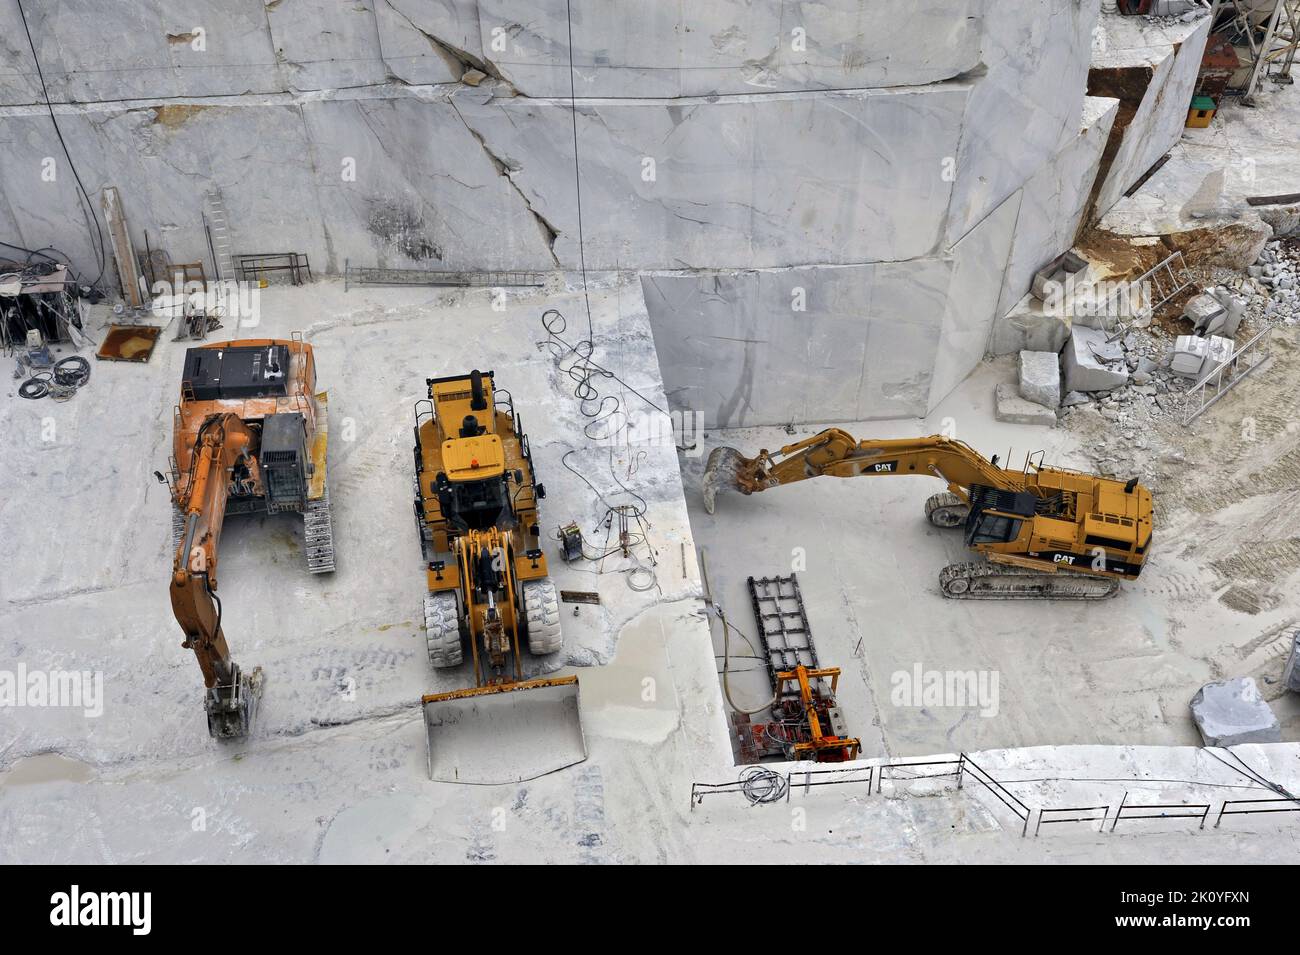 Carrara(Tuscany, Italy), marble quarries Stock Photo